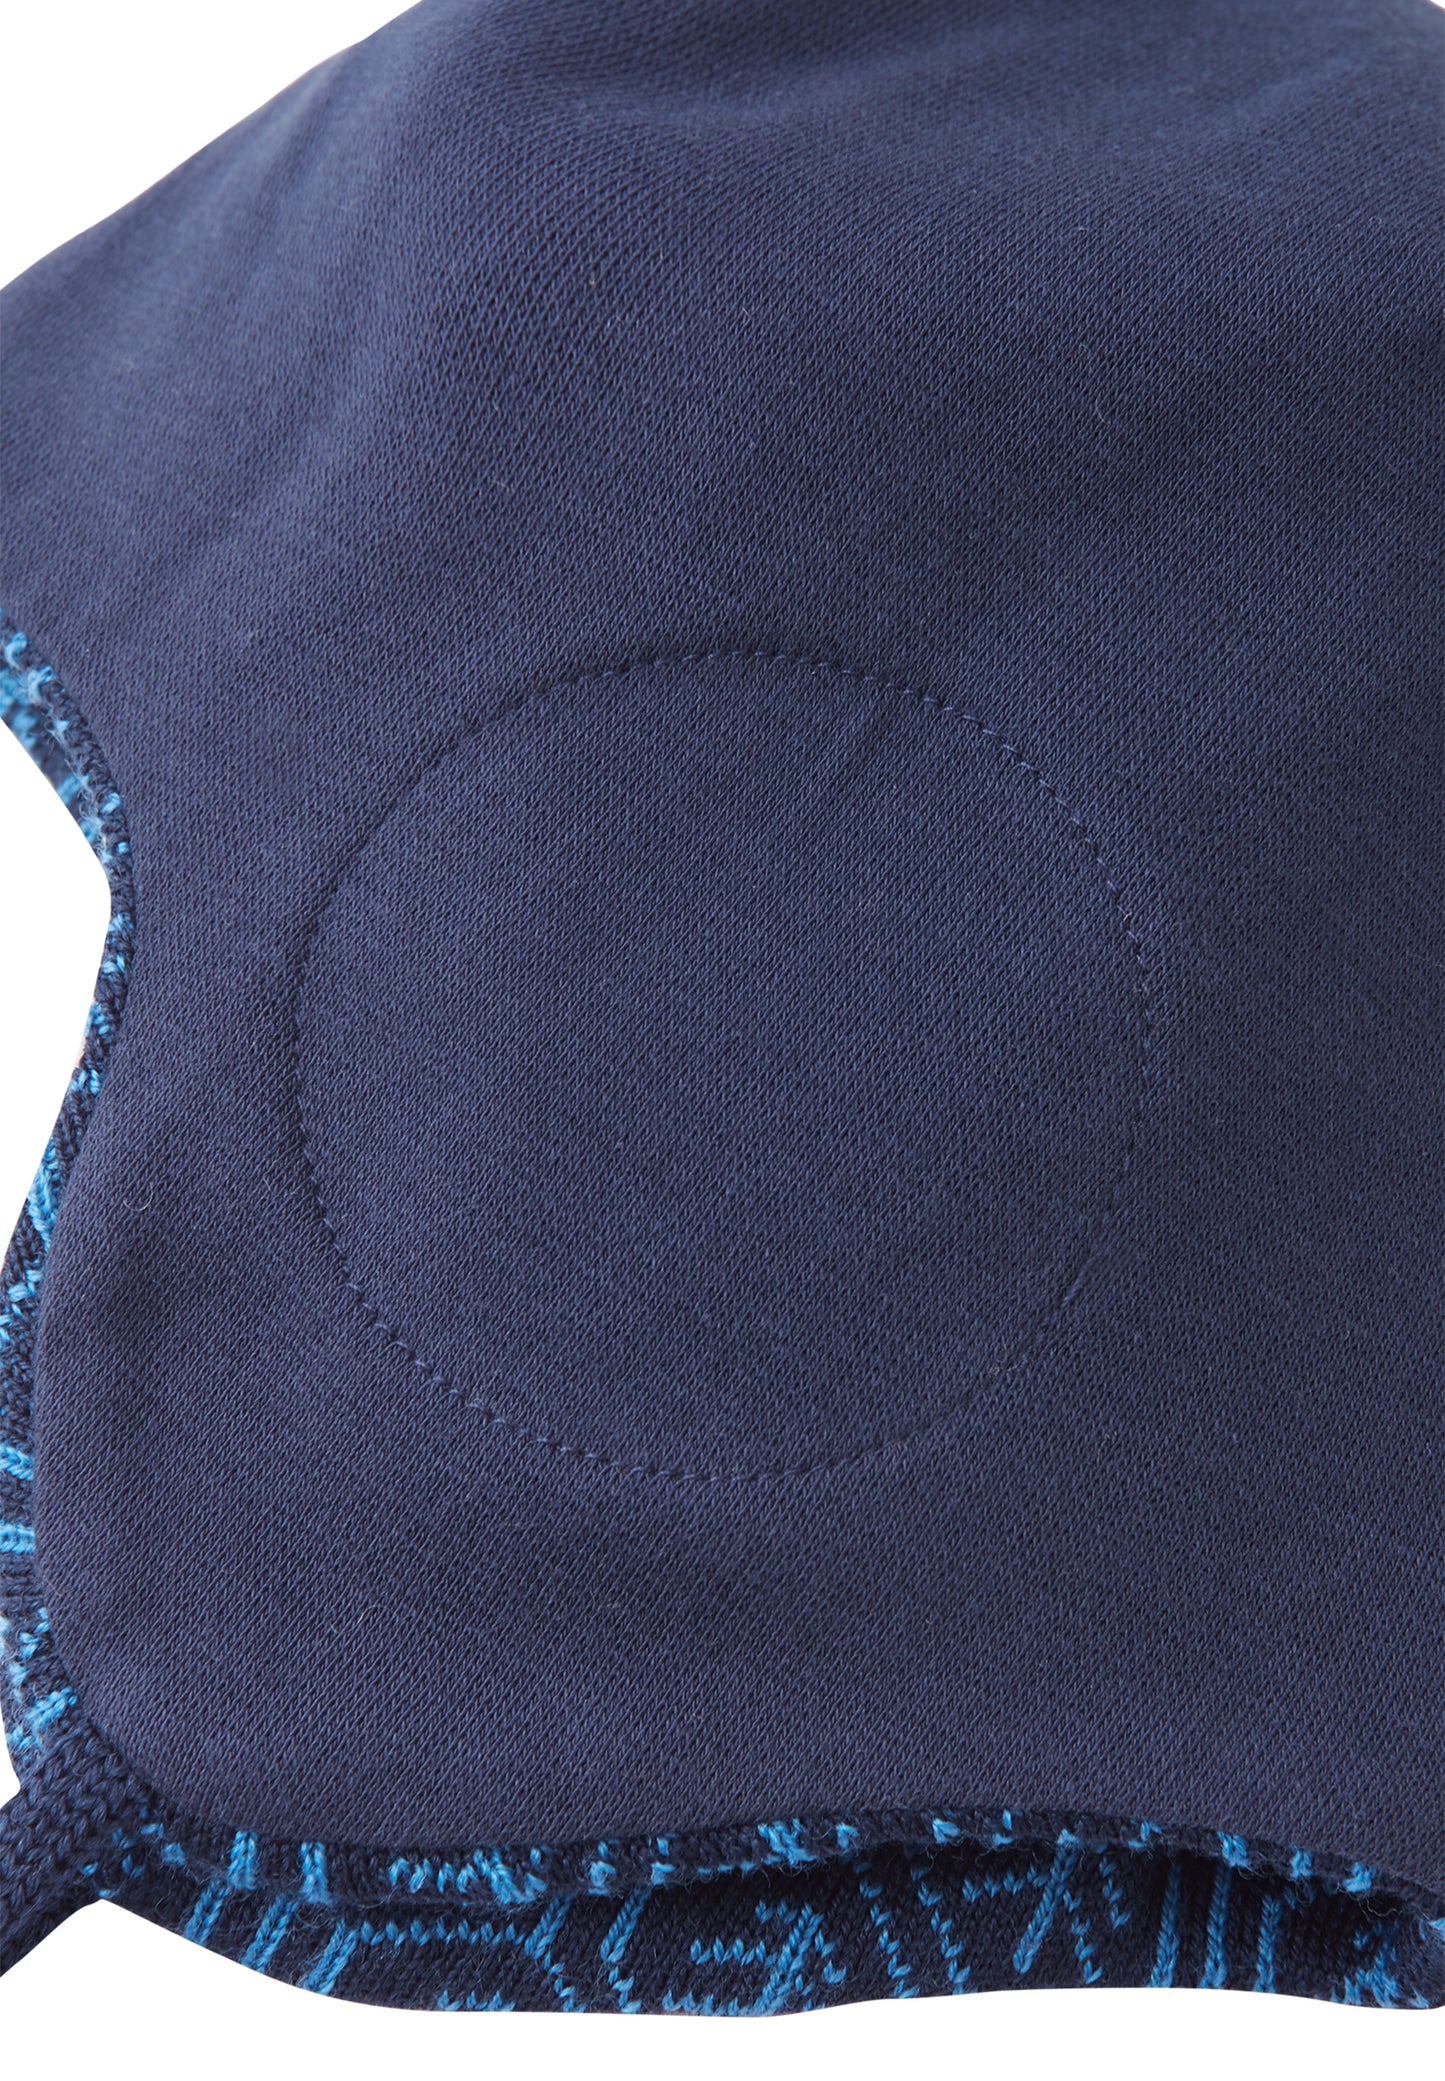 Reima Mütze mit Bändel <br>Kuurainen <br>Gr. 46, 48, 50 <br>innen hautfreundliche Bio-Baumwolle<br> aussen warme, wasserabweisende Merino-Wolle<br> Windstopper-Membrane im Ohrbereich